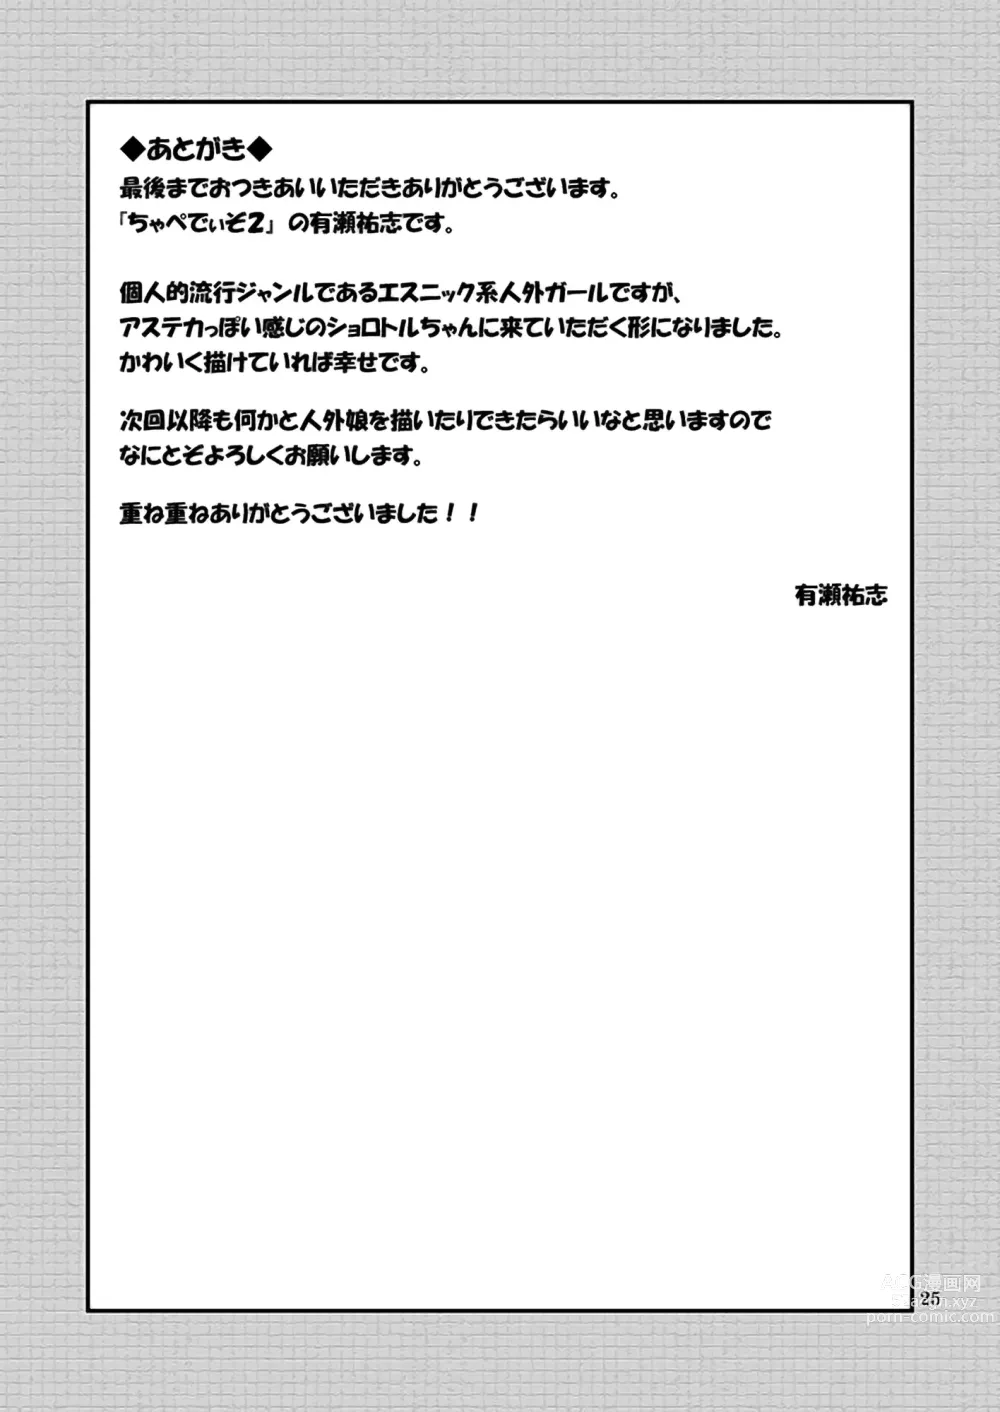 Page 24 of doujinshi Salamandra no Hako